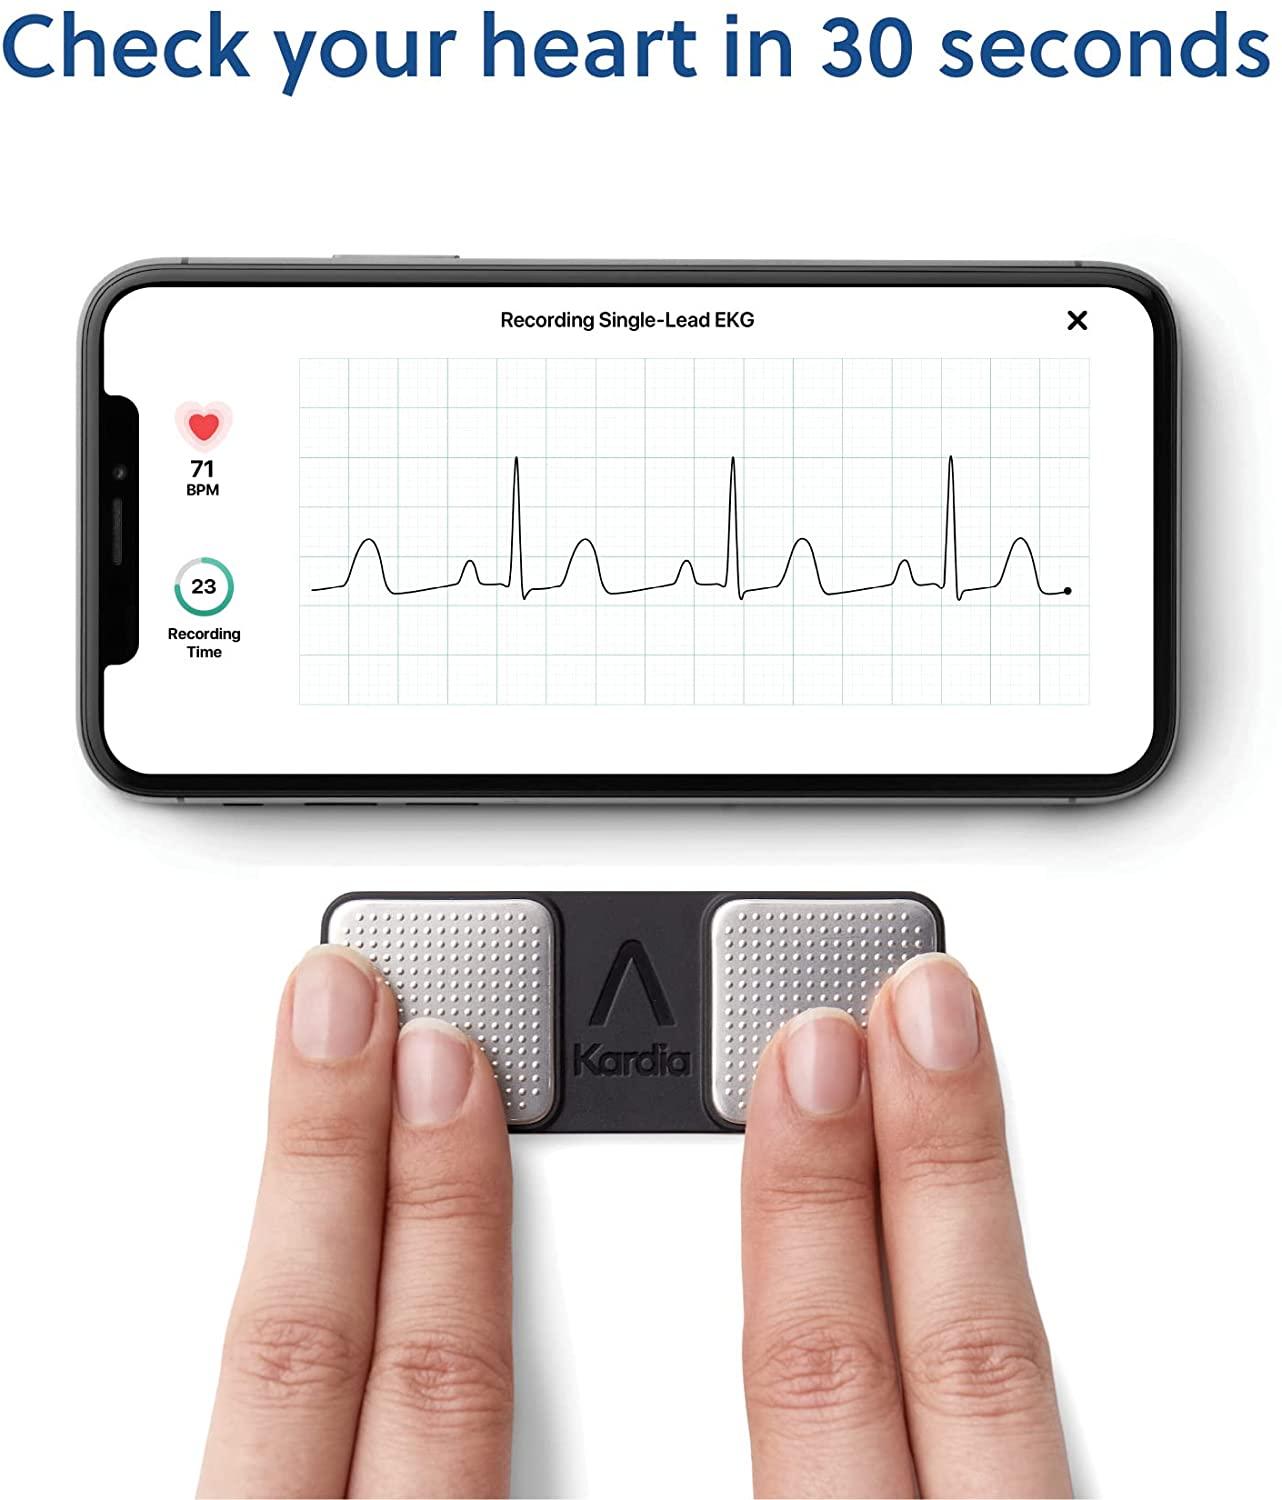 AliveCor Kardia Mobile 6L FDA Cleared- Mobile ECG Device, New